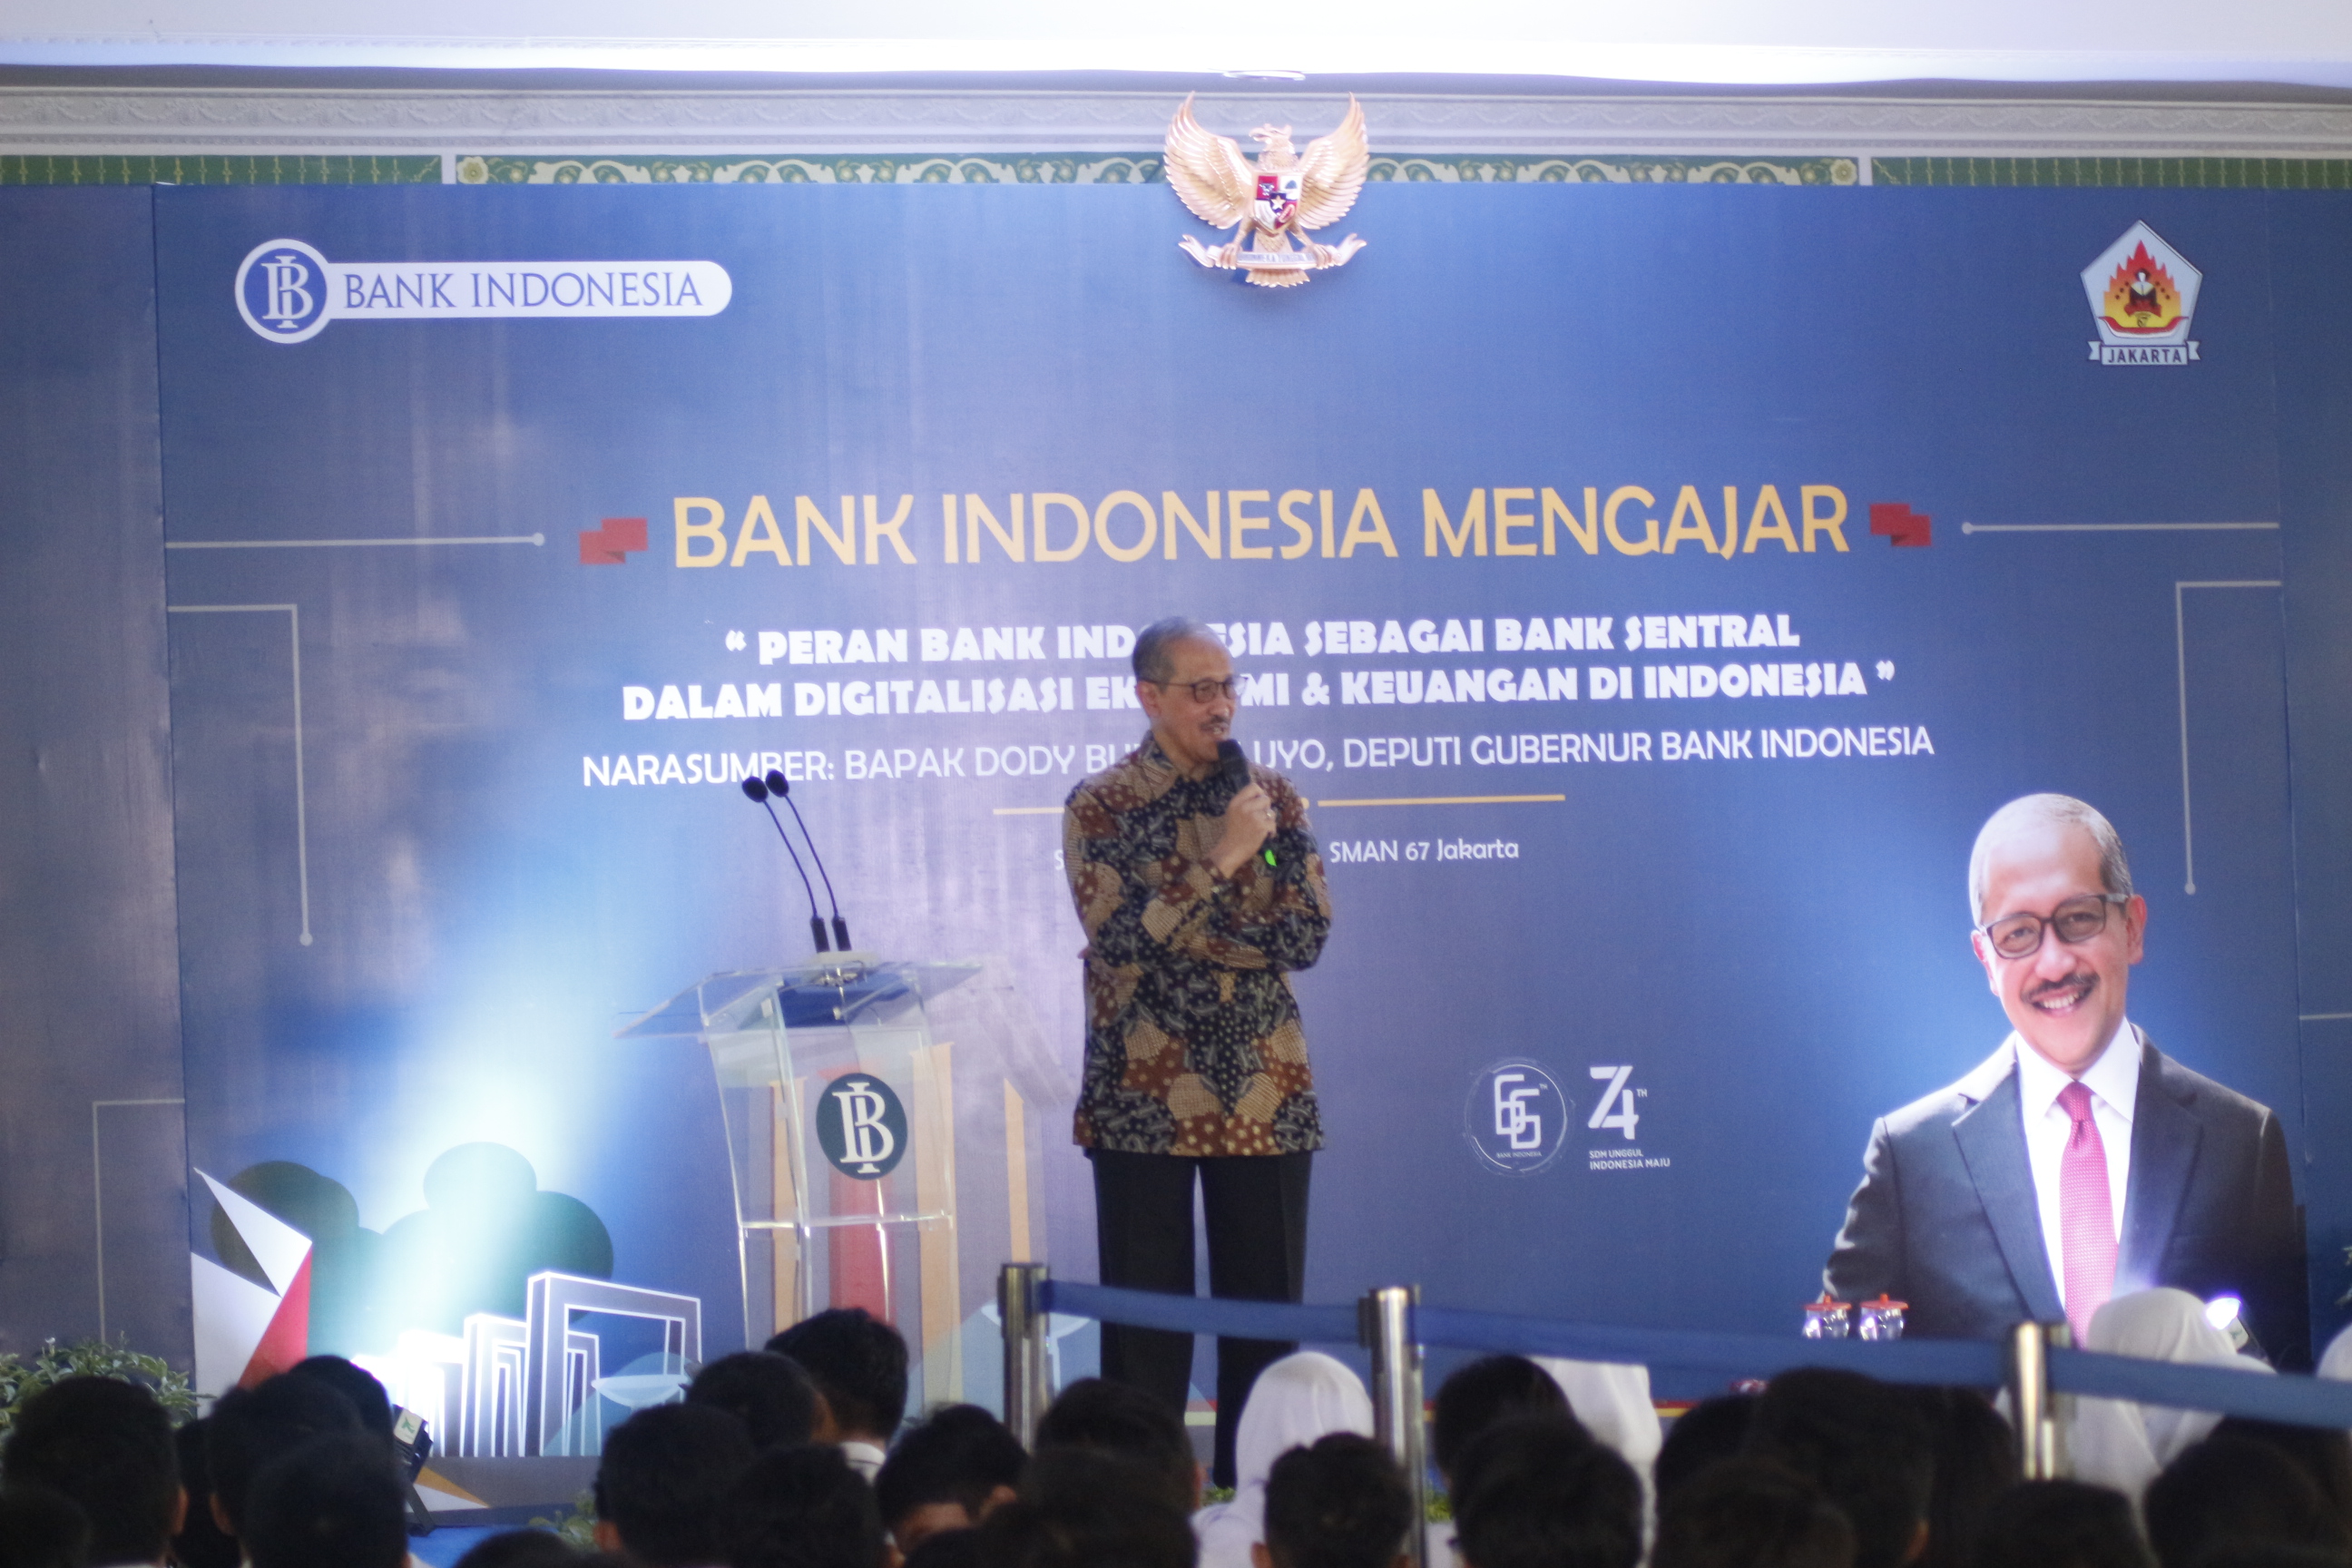 Bank Indonesia Mengajar